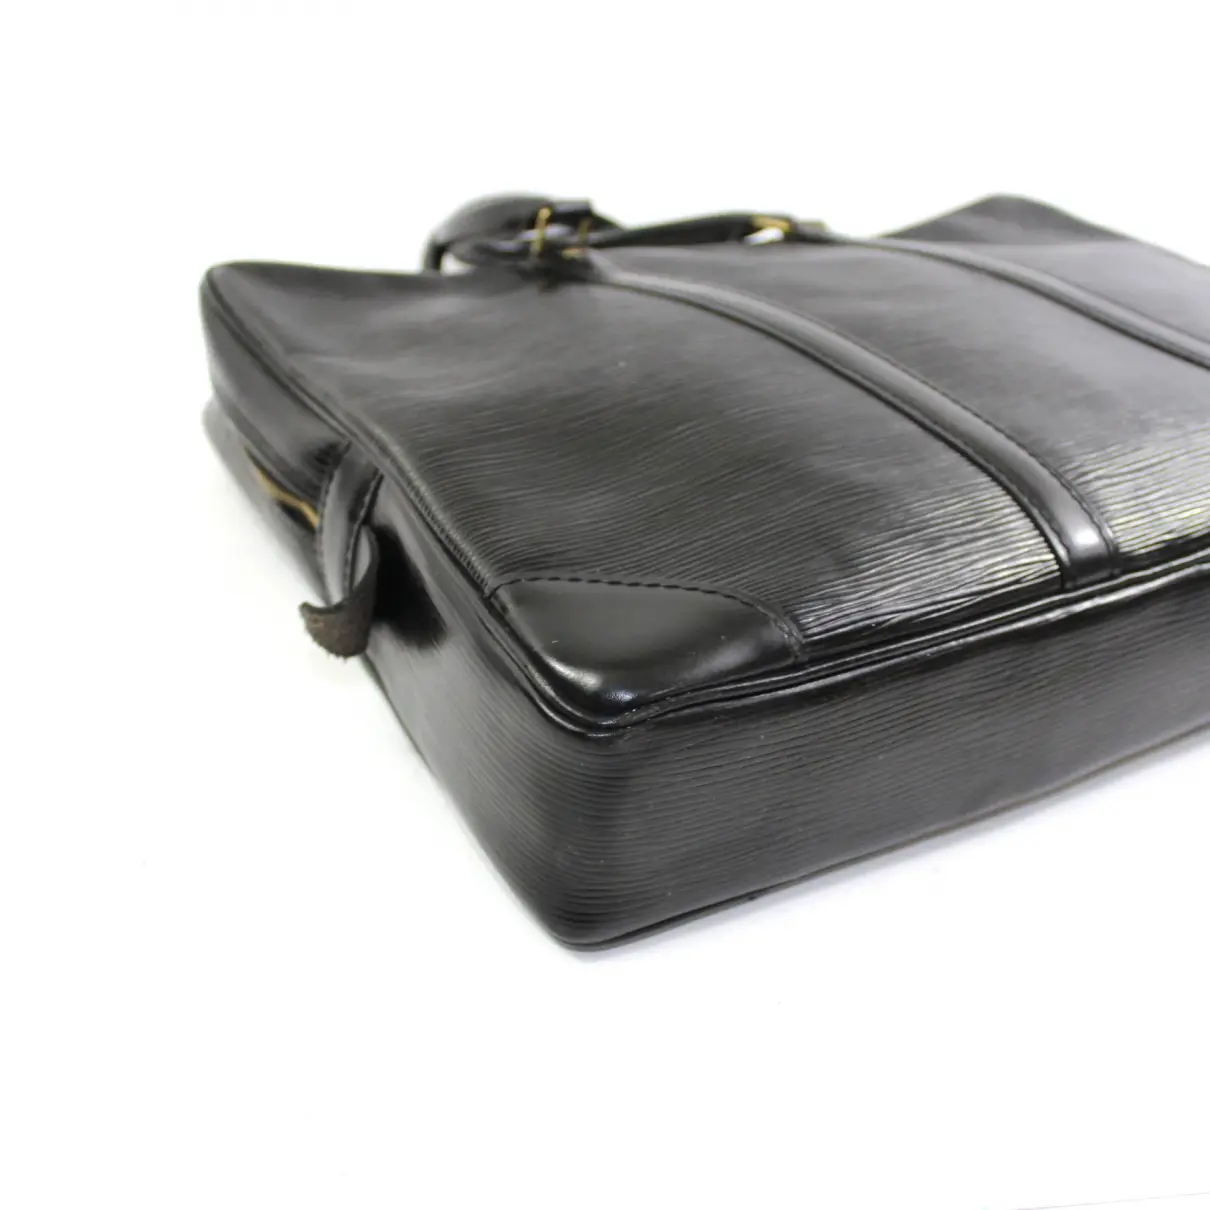 Louis Vuitton Porte Documents Voyage leather bag for sale - Vintage